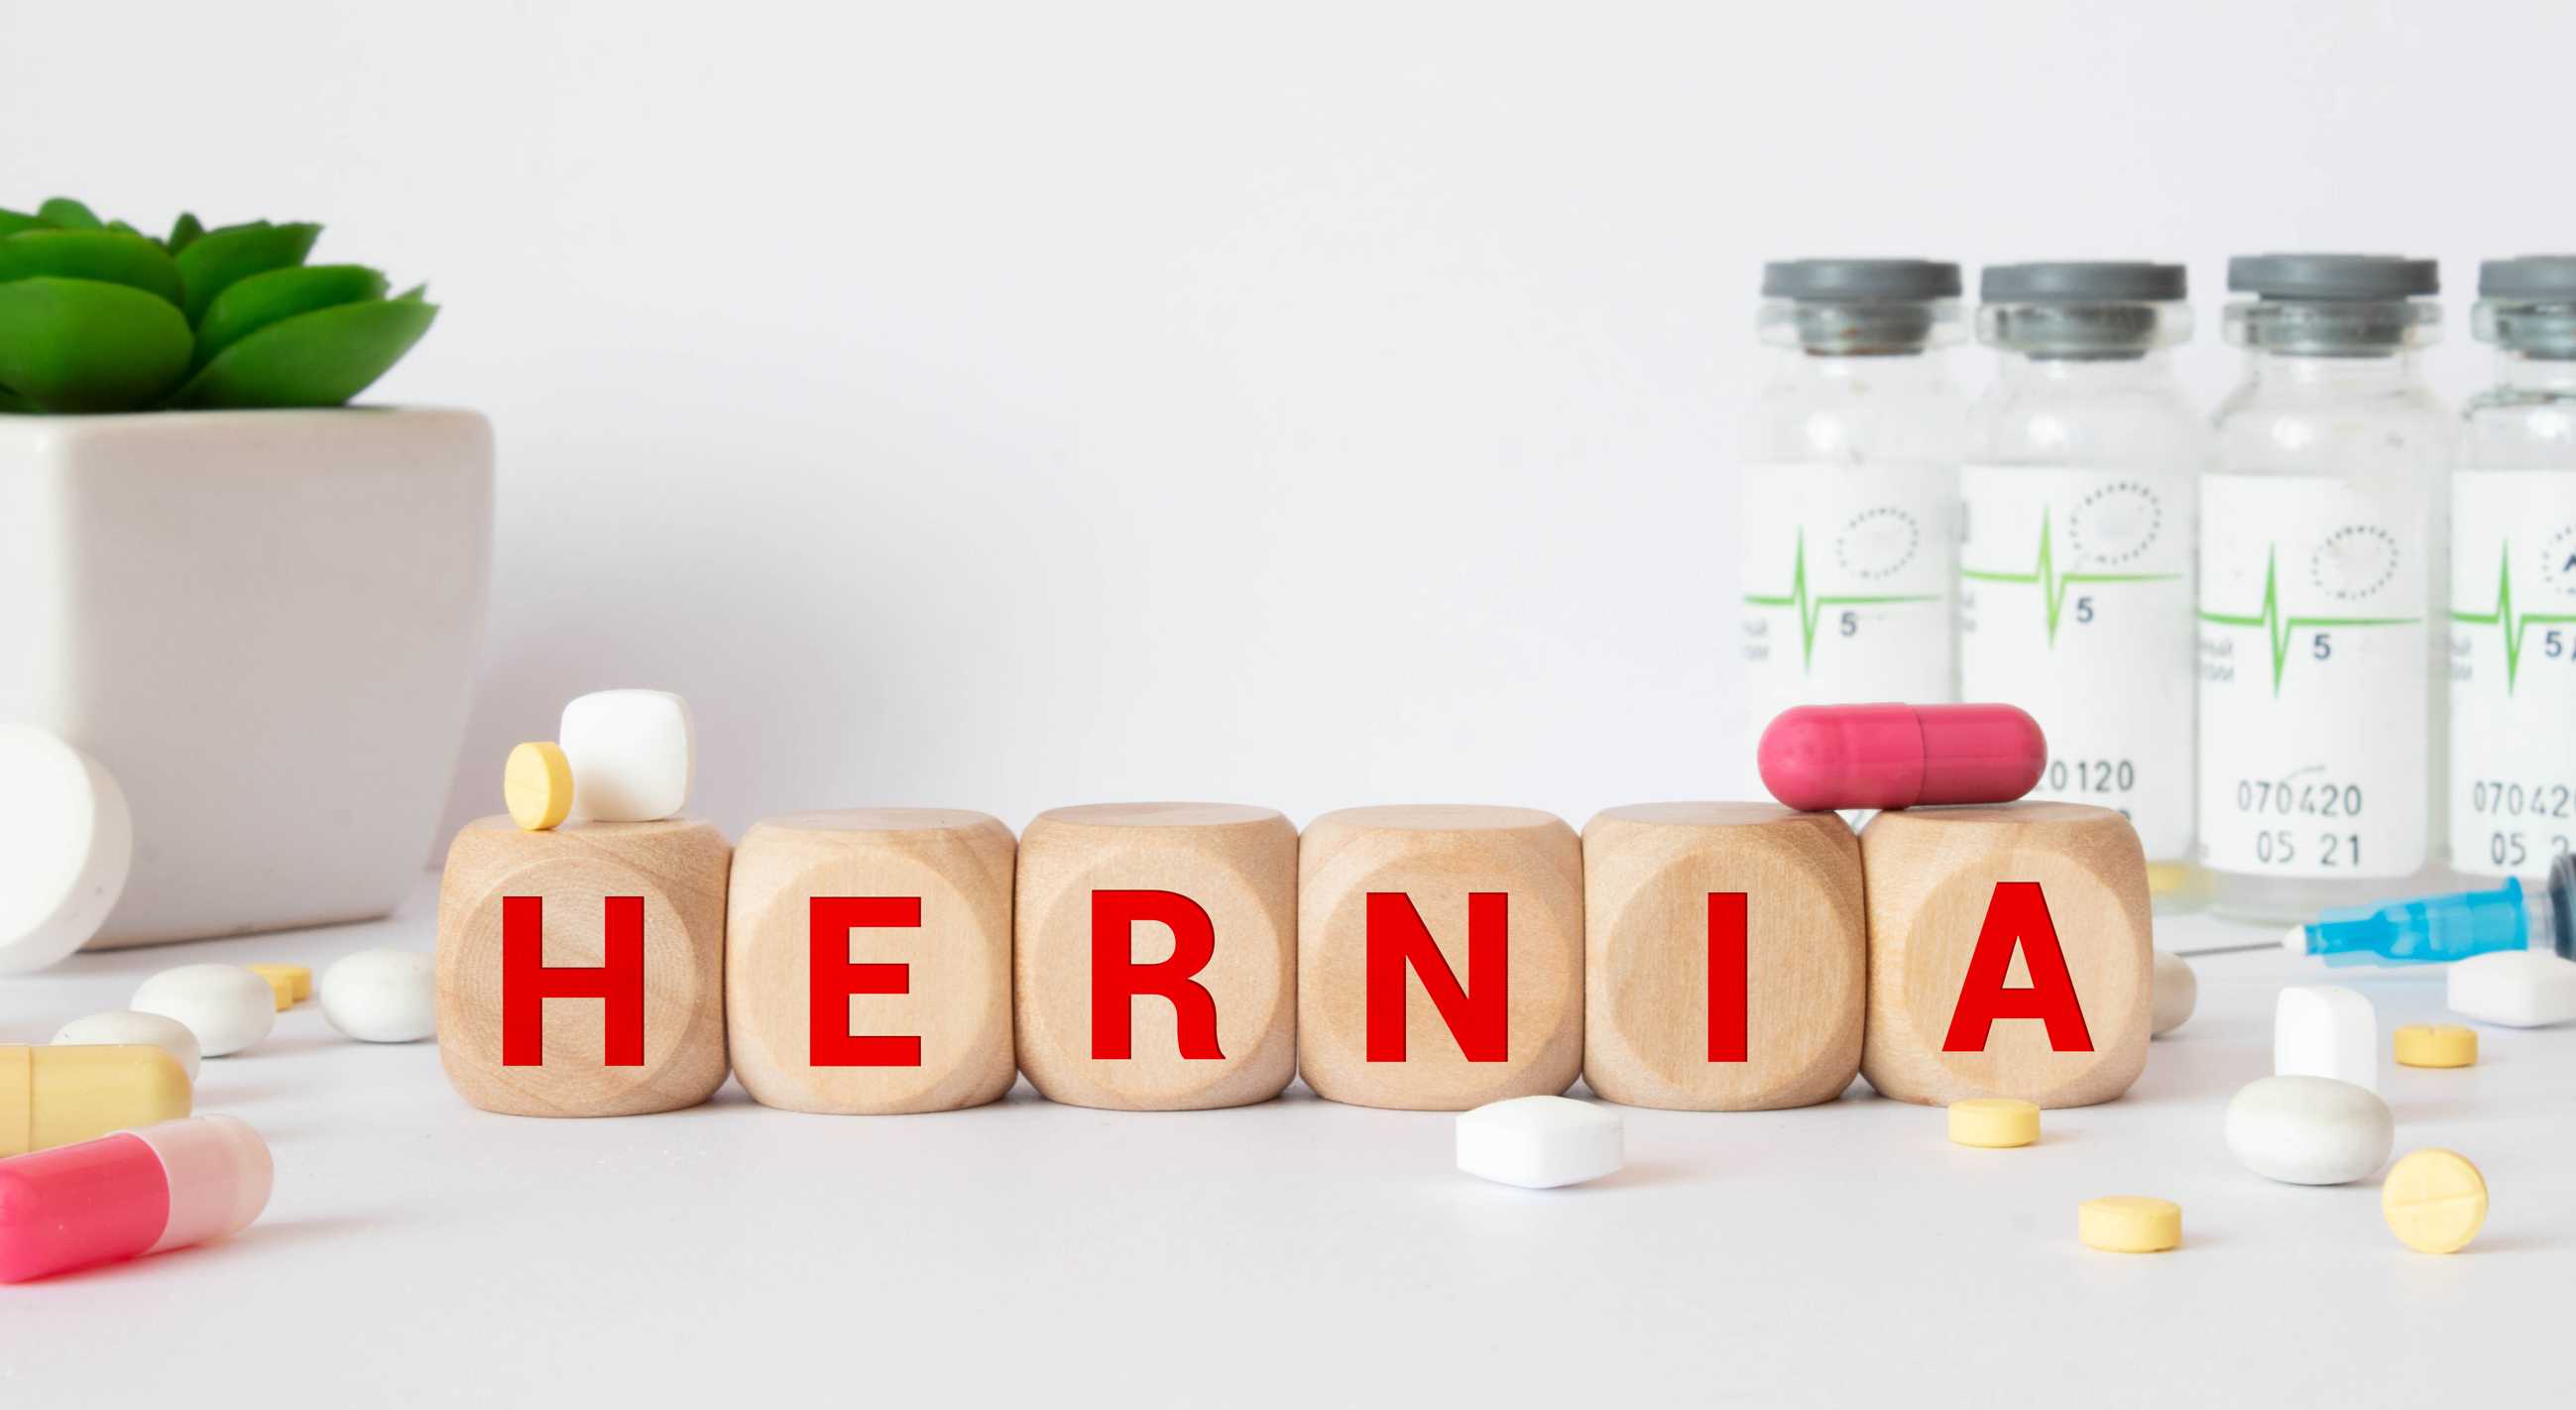 Is Hernia Dangerous?